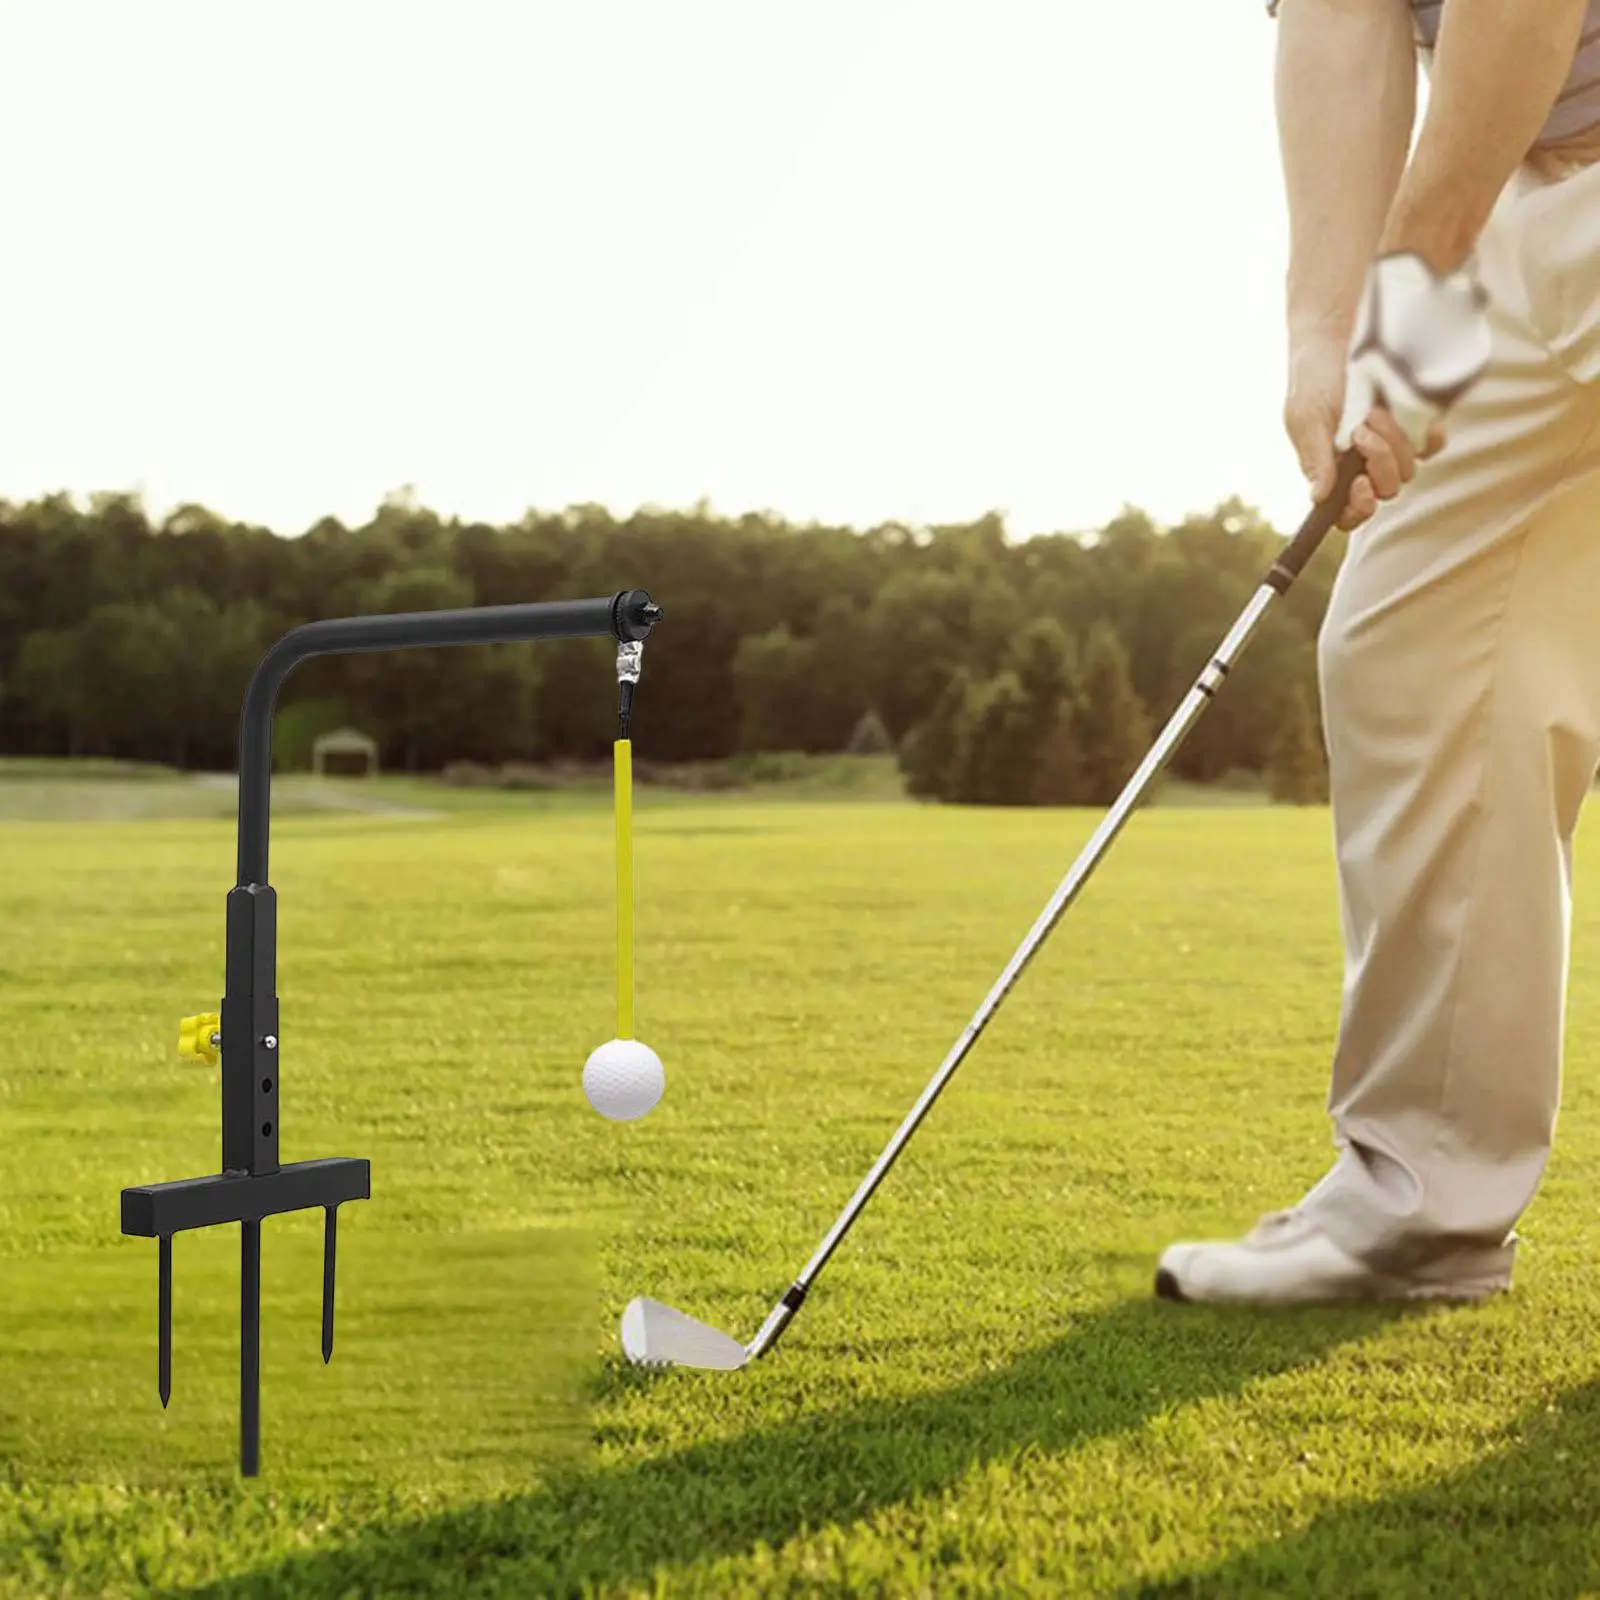 

Тренажер для гольфа, аксессуары для гольфа, регулируемый по высоте для любого уровня оборудования, инструмент, металлический садовый тренажер